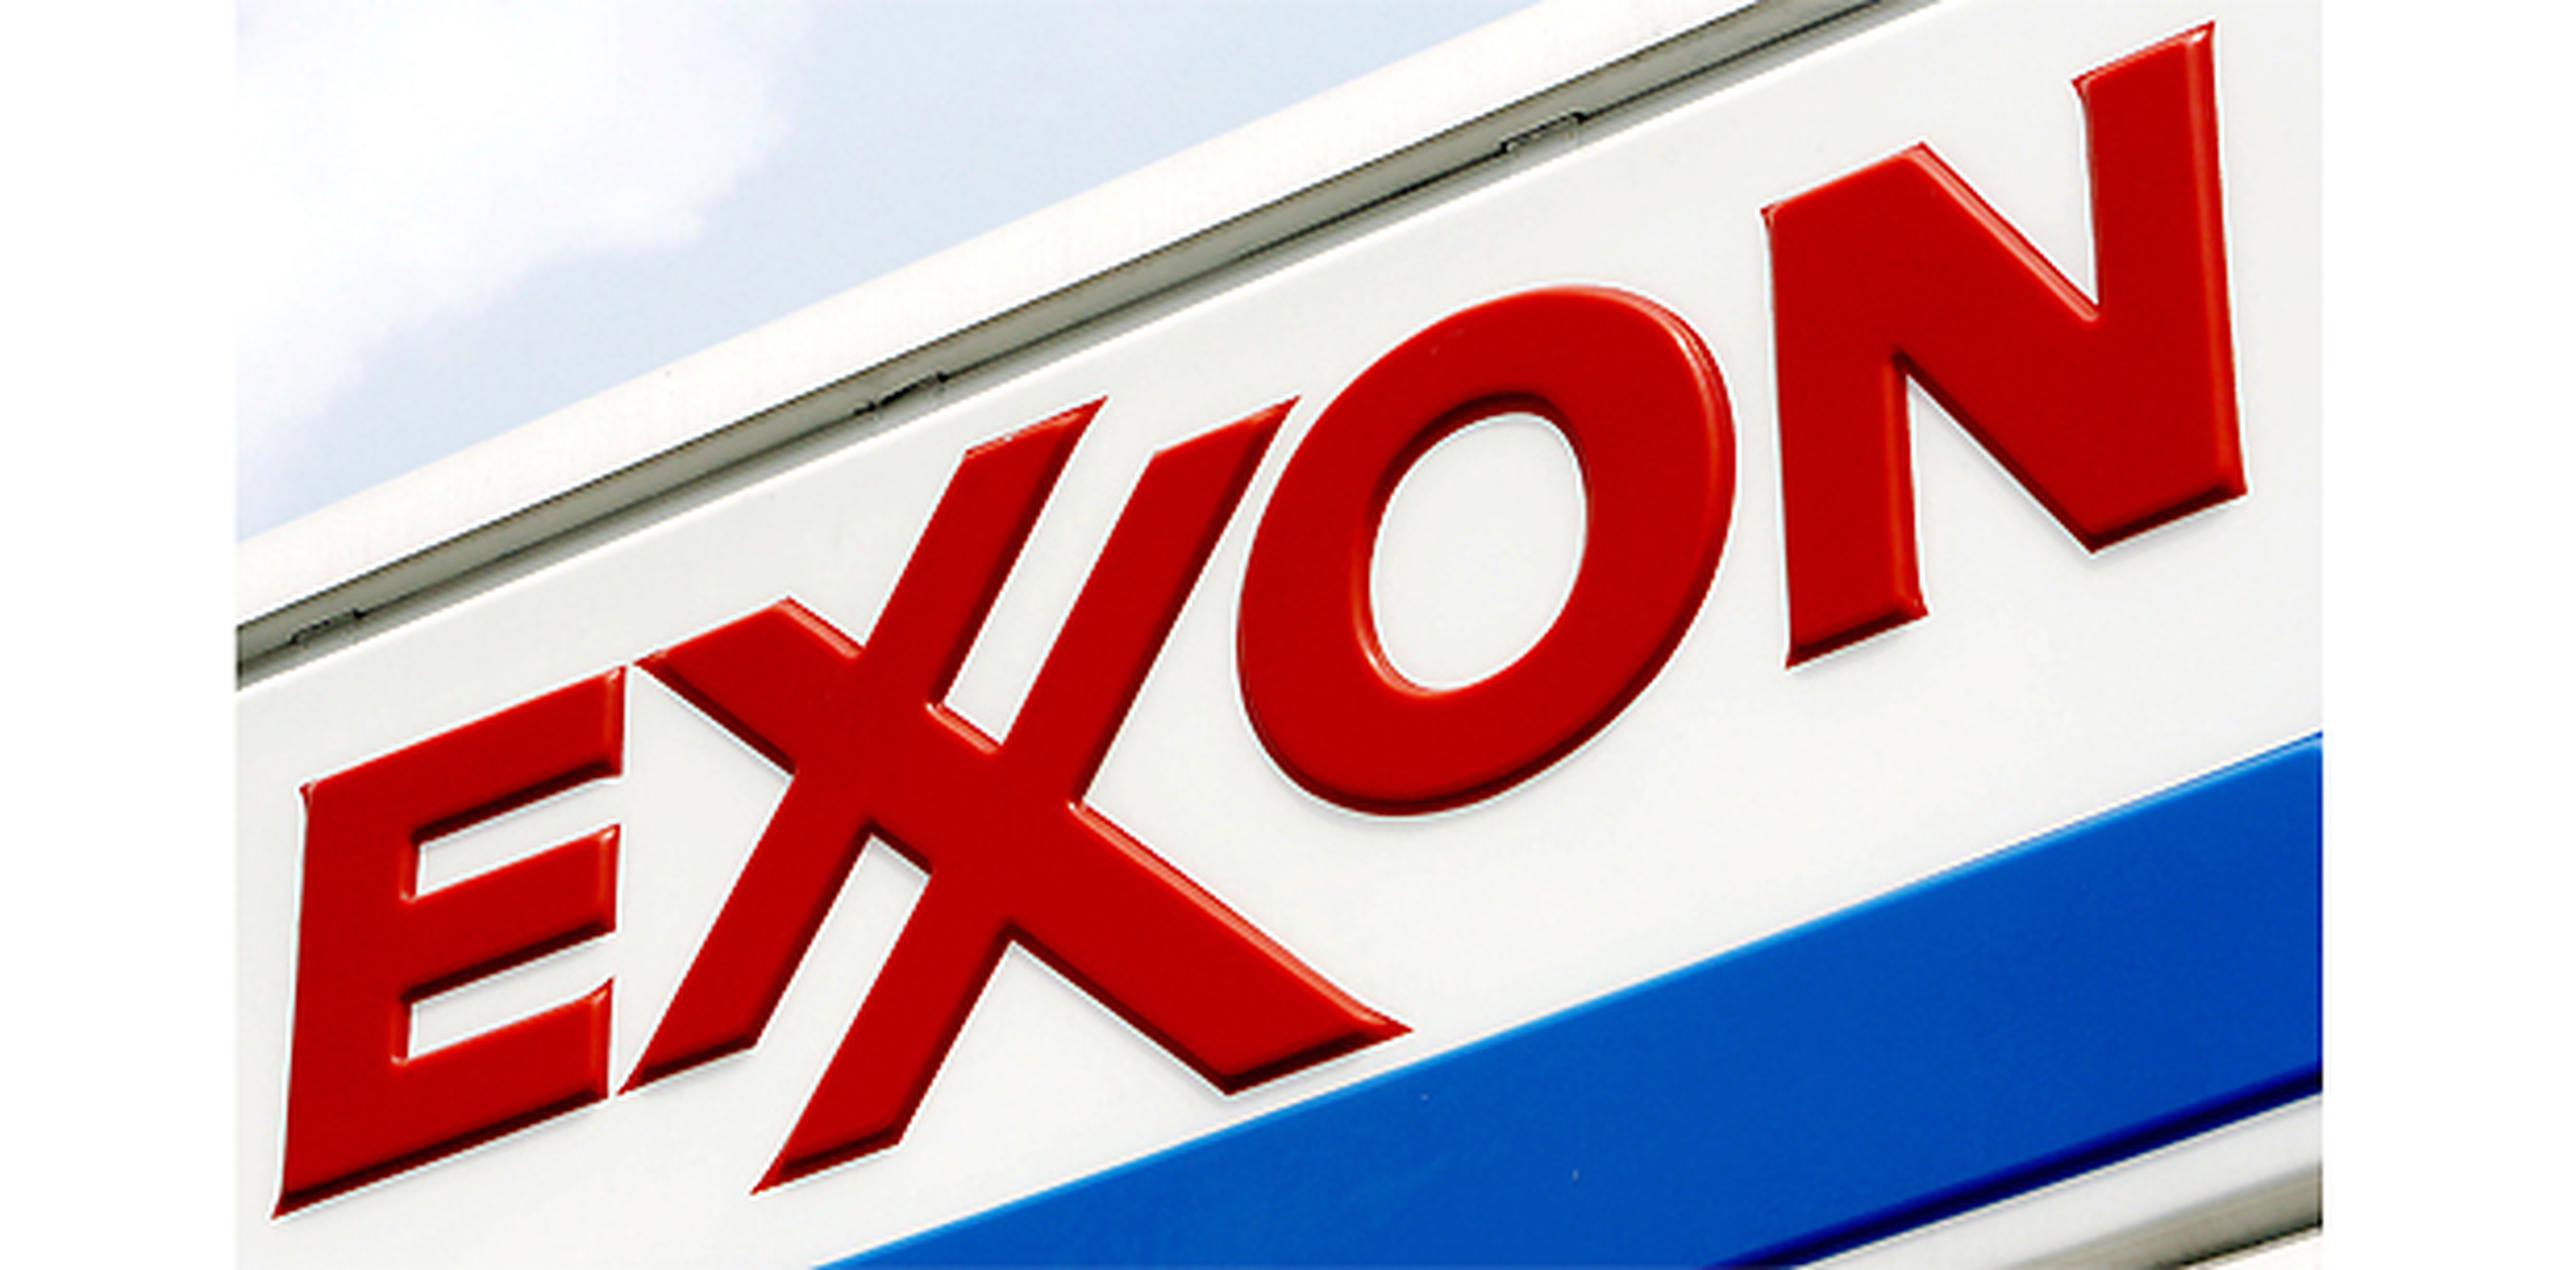 Abogados de Exxon Mobil dijeron que la compañía usó MTBE para satisfacer los requerimientos de la Ley de Aire Limpio para reducir contaminación y no debería ser penalizada por la contaminación causada por terceras partes. (Archivo)